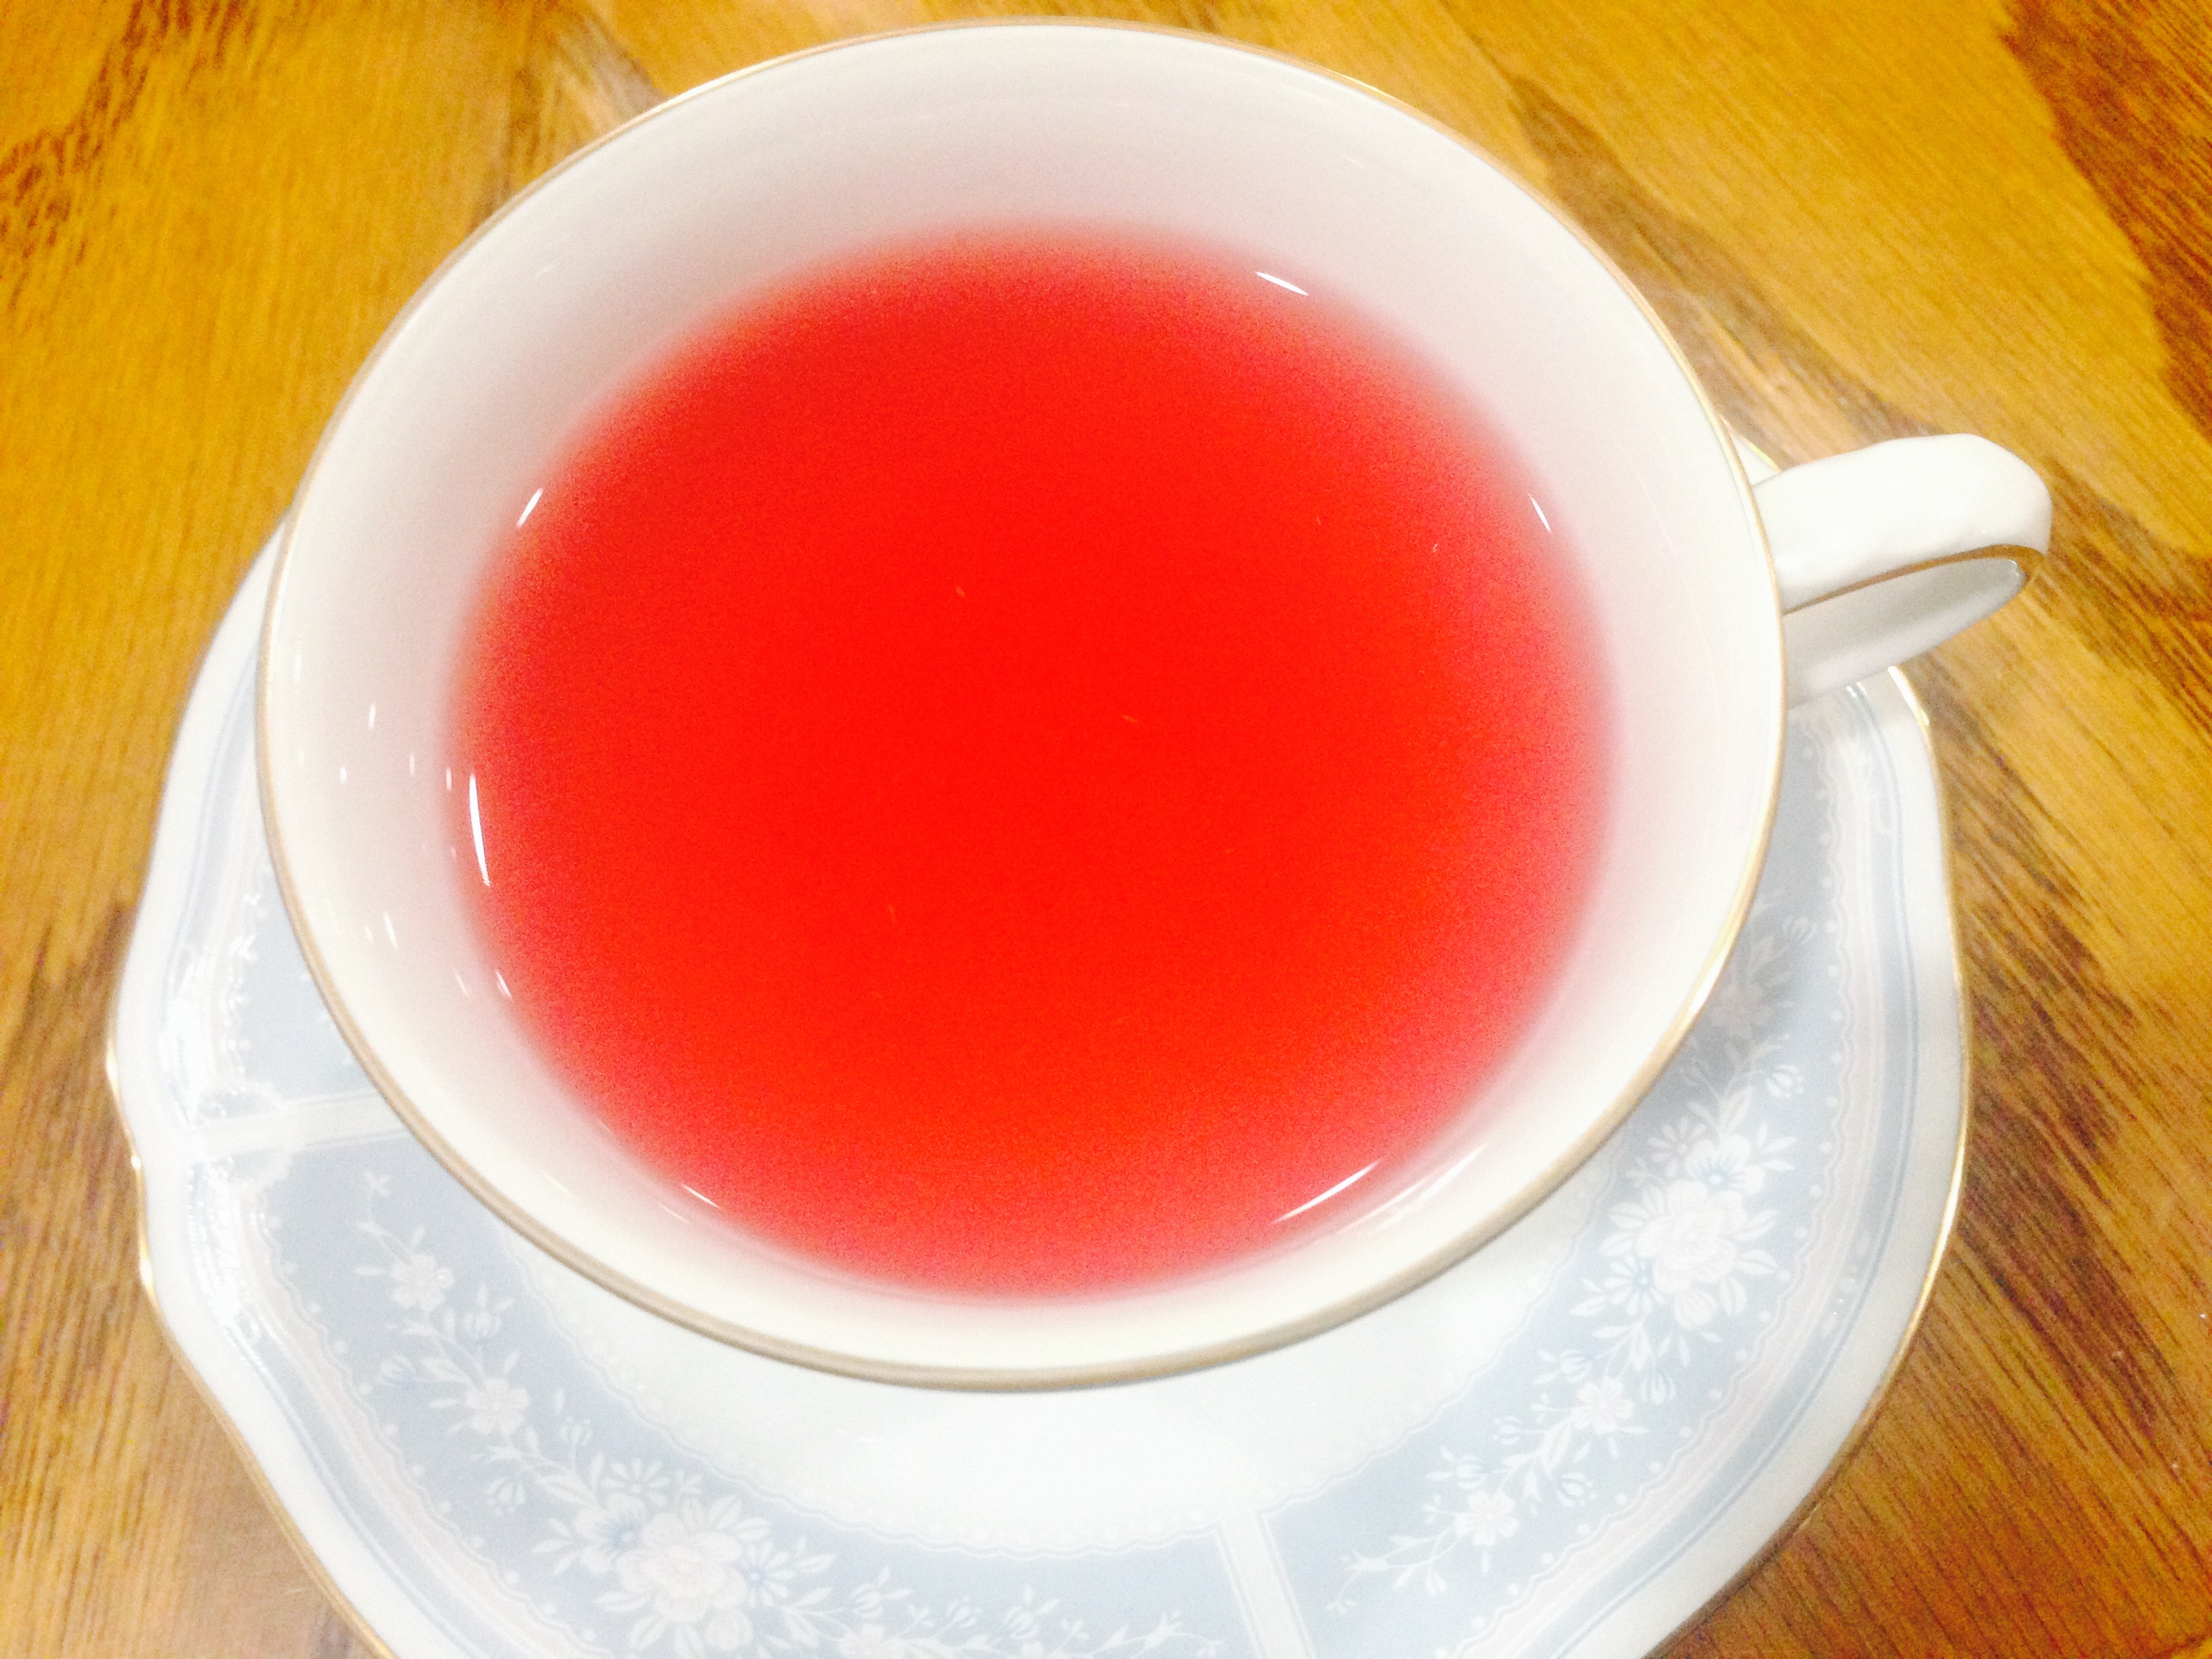 TEAPOND 的「Blue Marrow」茶湯裡擠上檸檬汁後便從藍紫色轉變成粉紅色